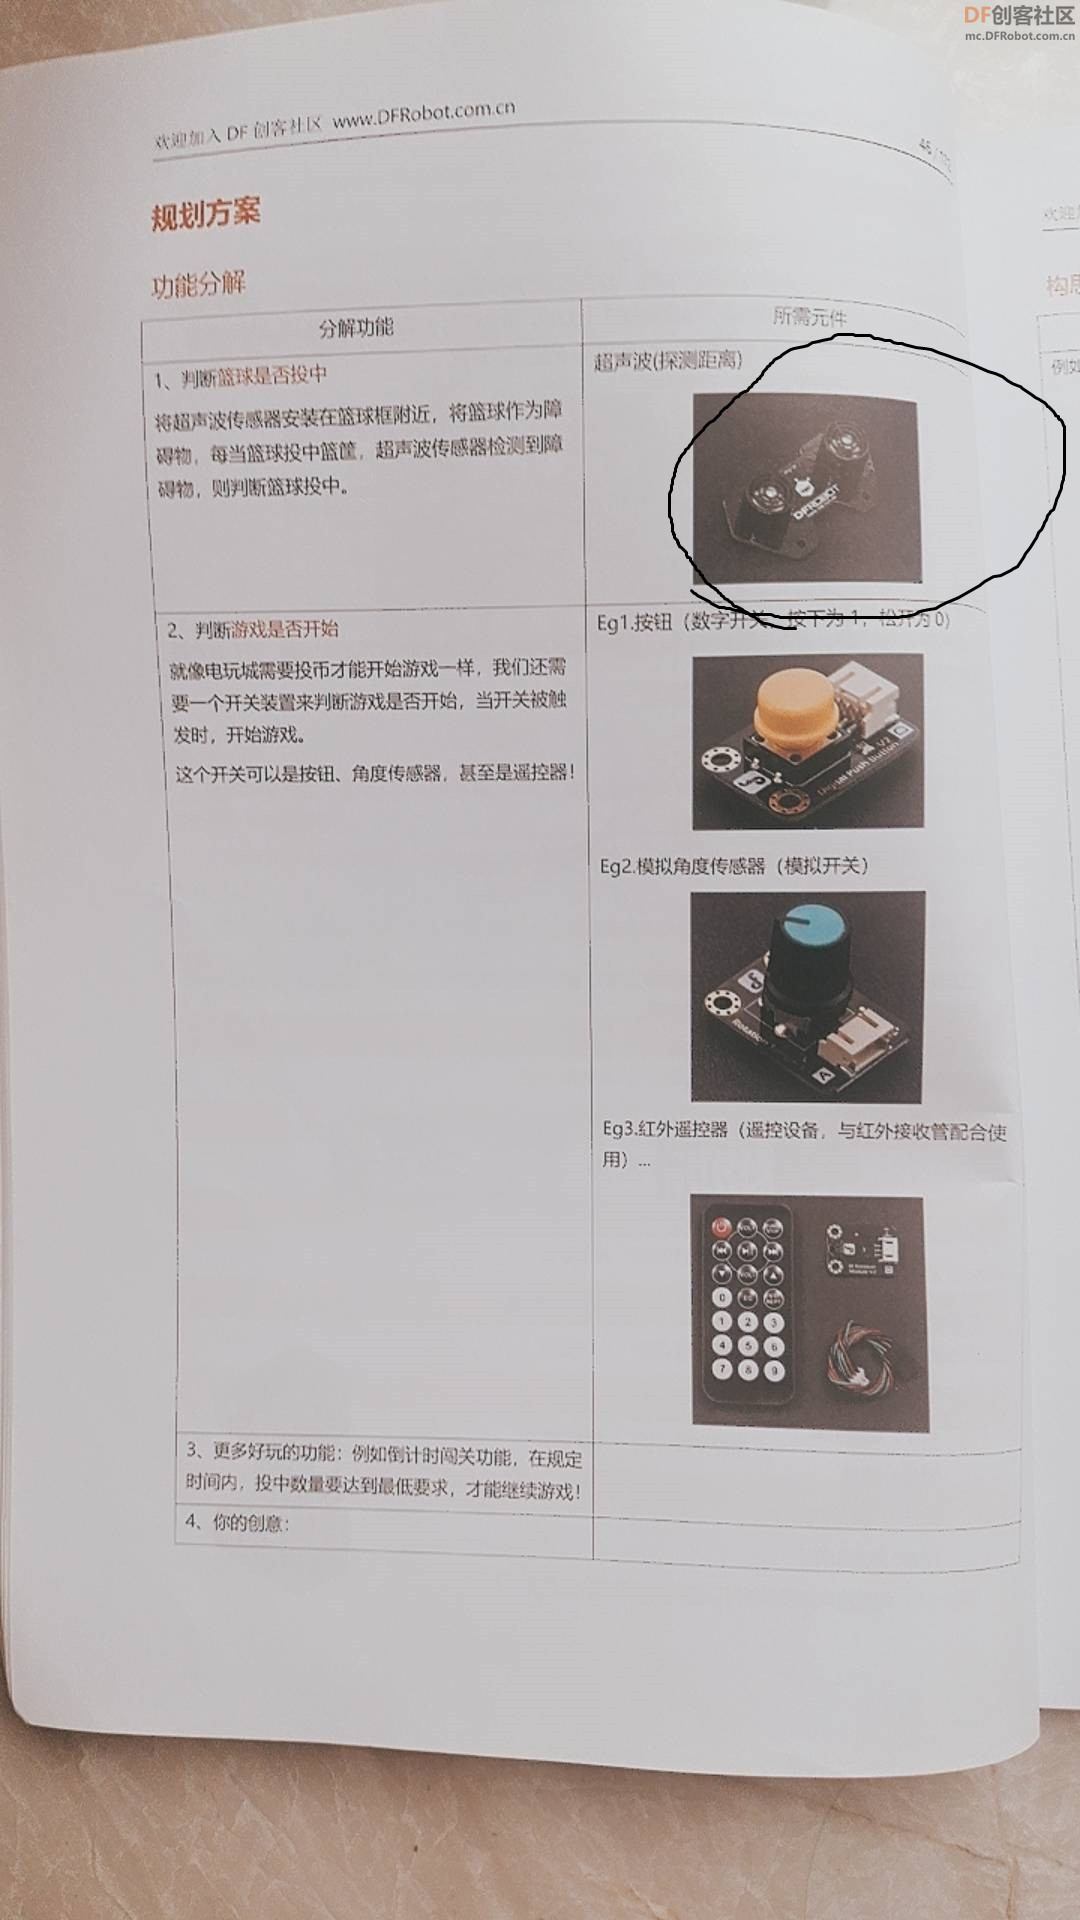 这个超声波传感器在哪里买？图2